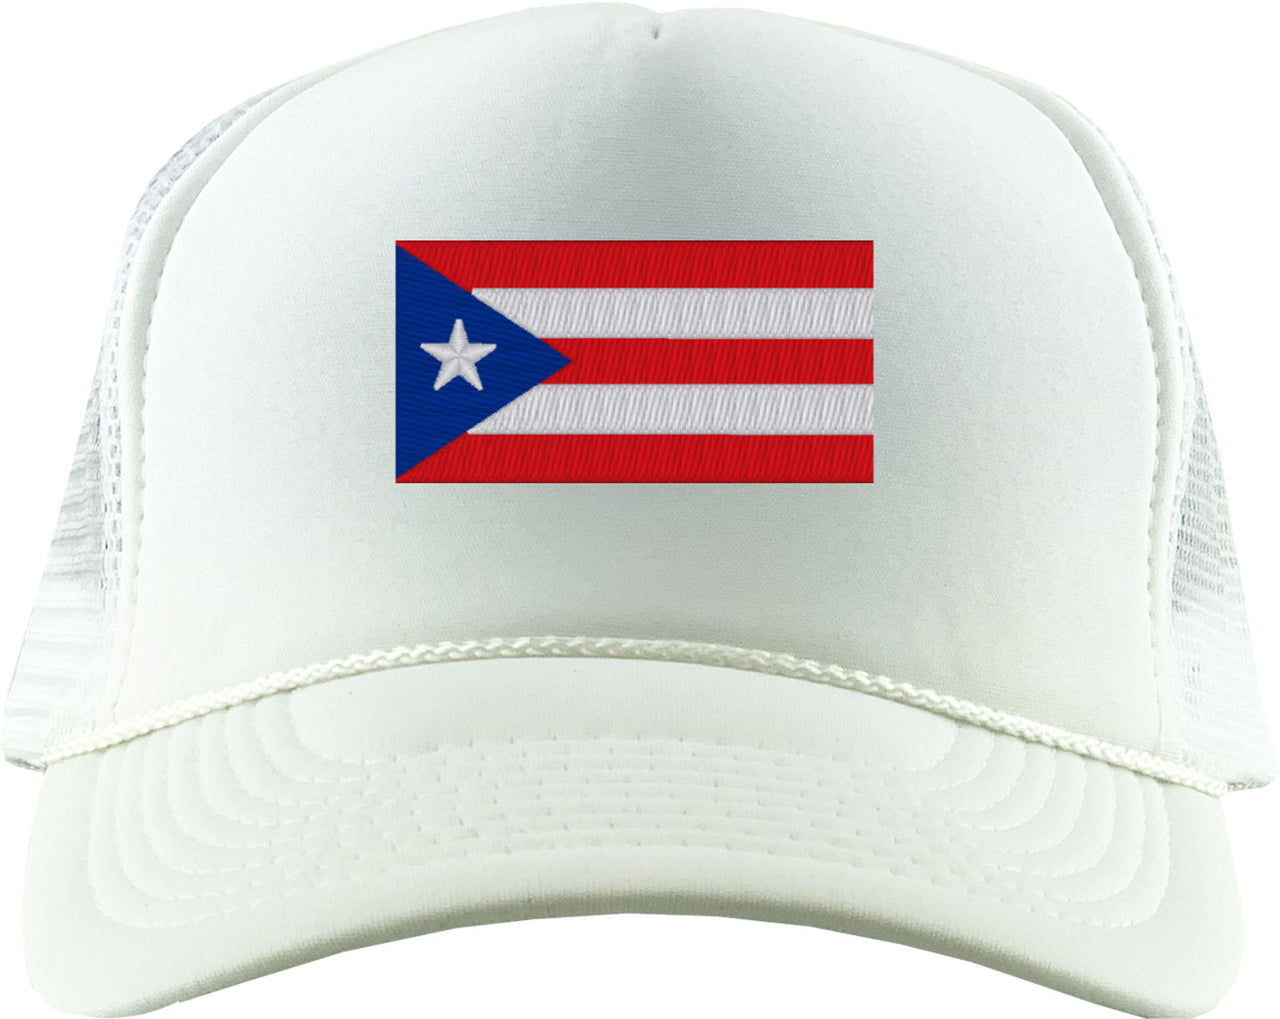 Puerto Rico Flag Foam Trucker Hat